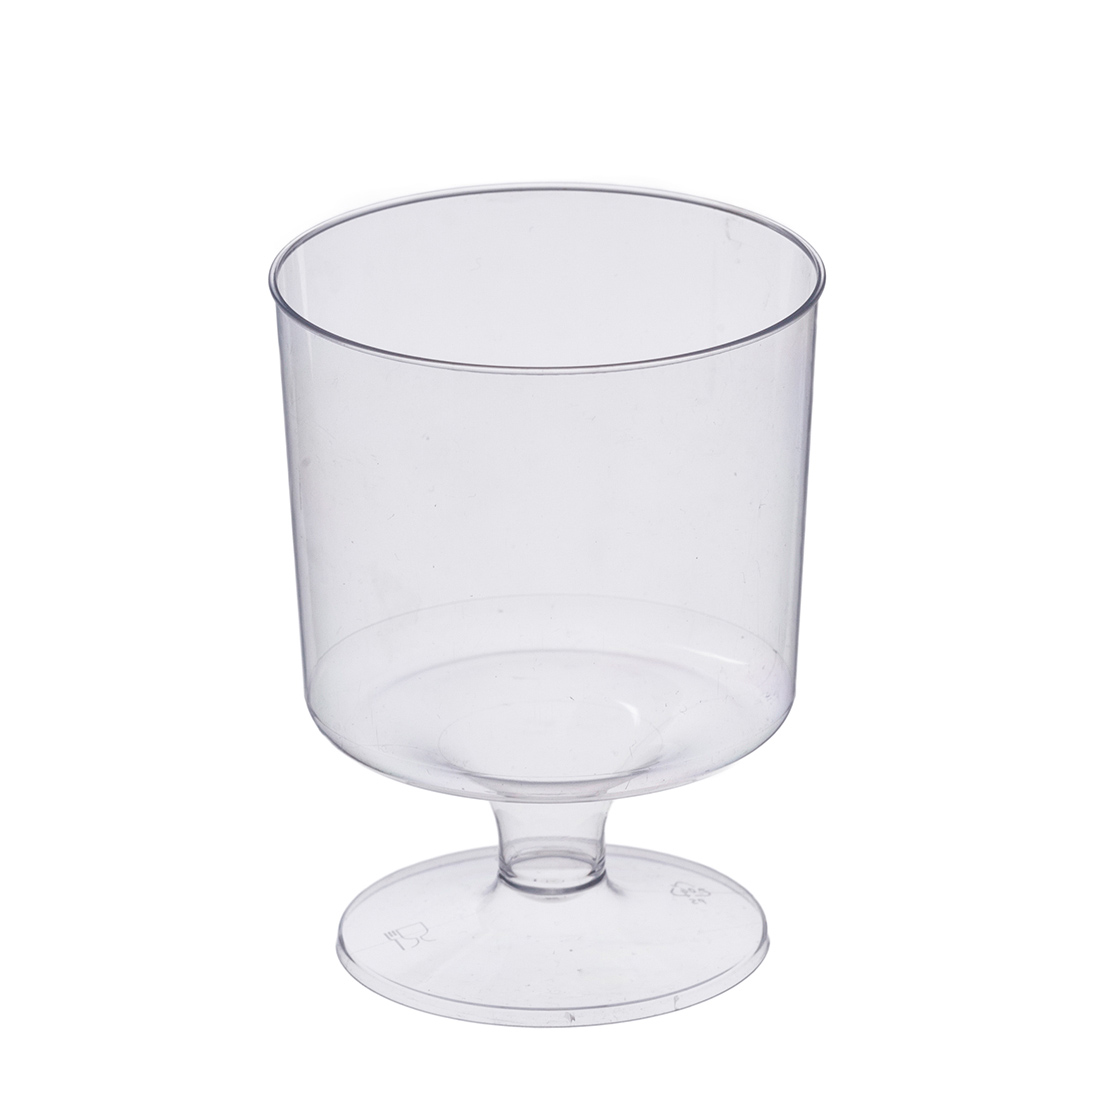 Weinglas PS glasklar 170ml